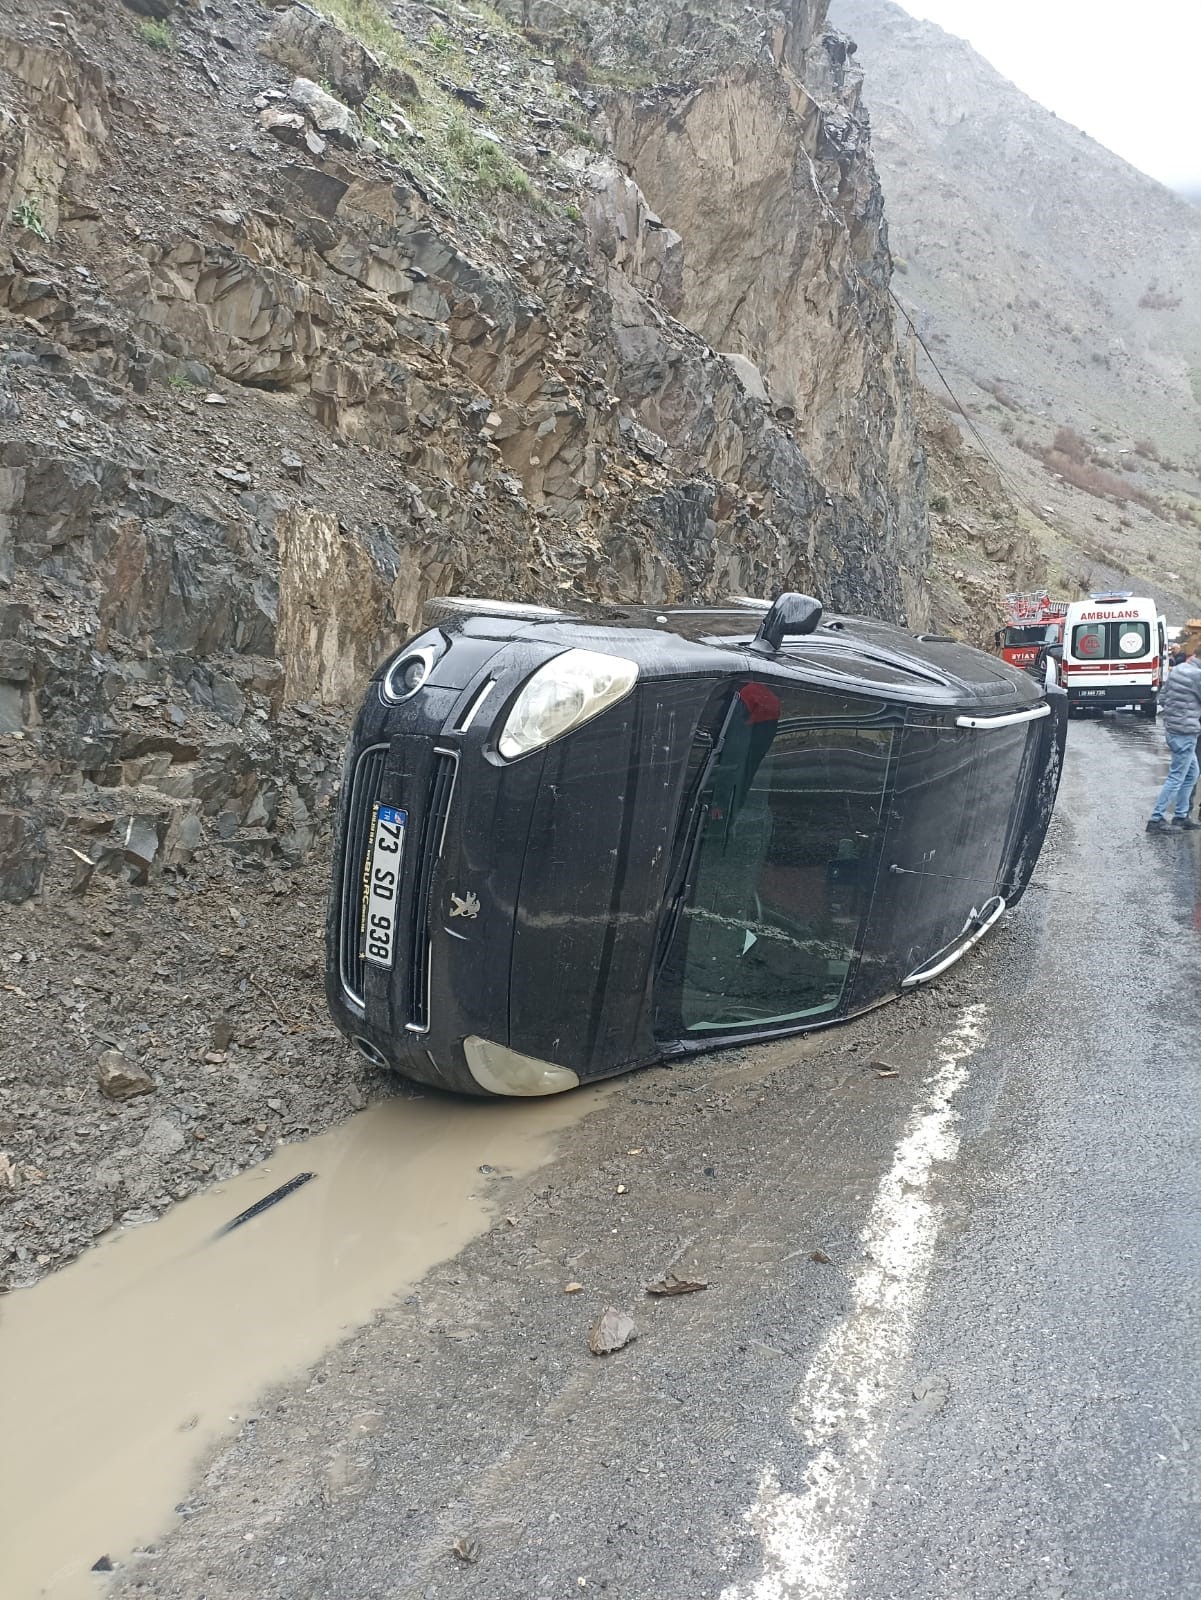 Hakkari’de kamyonet kaza yaptı! 5 kişi yaralandı